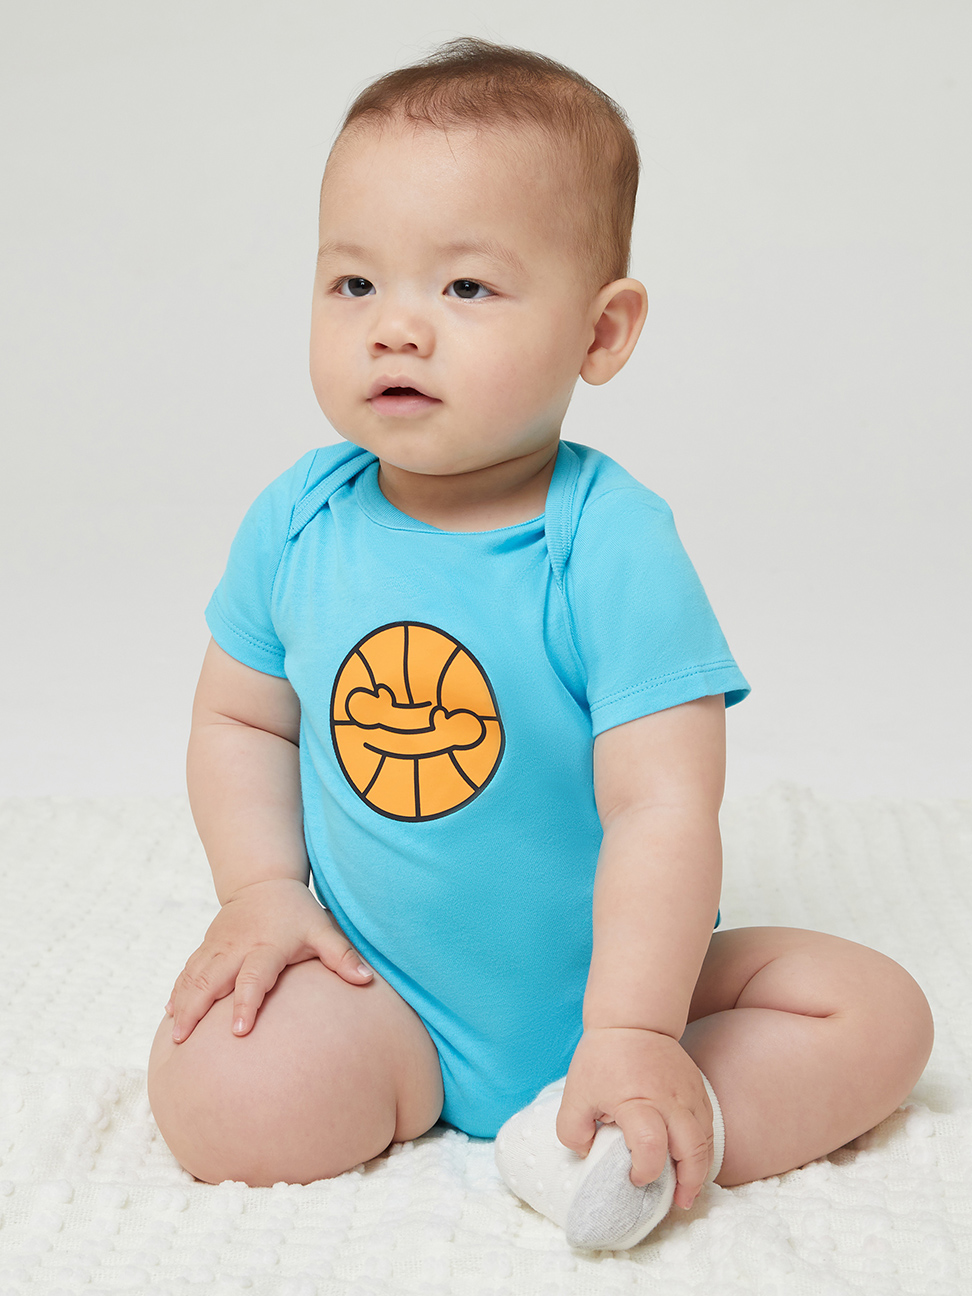 嬰兒裝|Gap x Ken Lo藝術家聯名 純棉印花包屁衣-天藍色